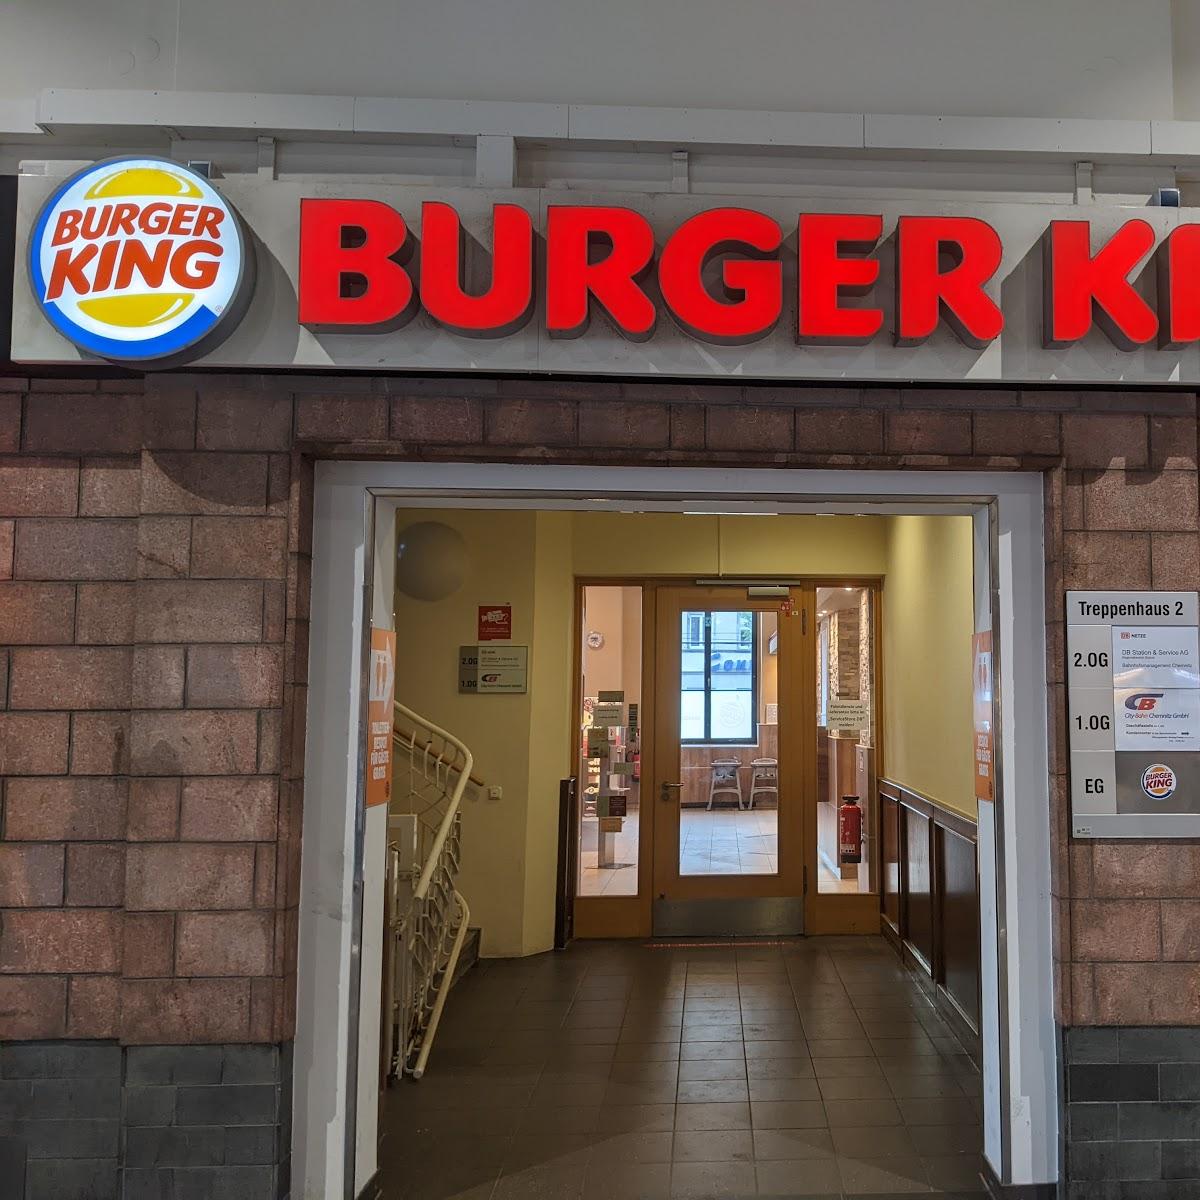 Restaurant "Burger King" in Chemnitz